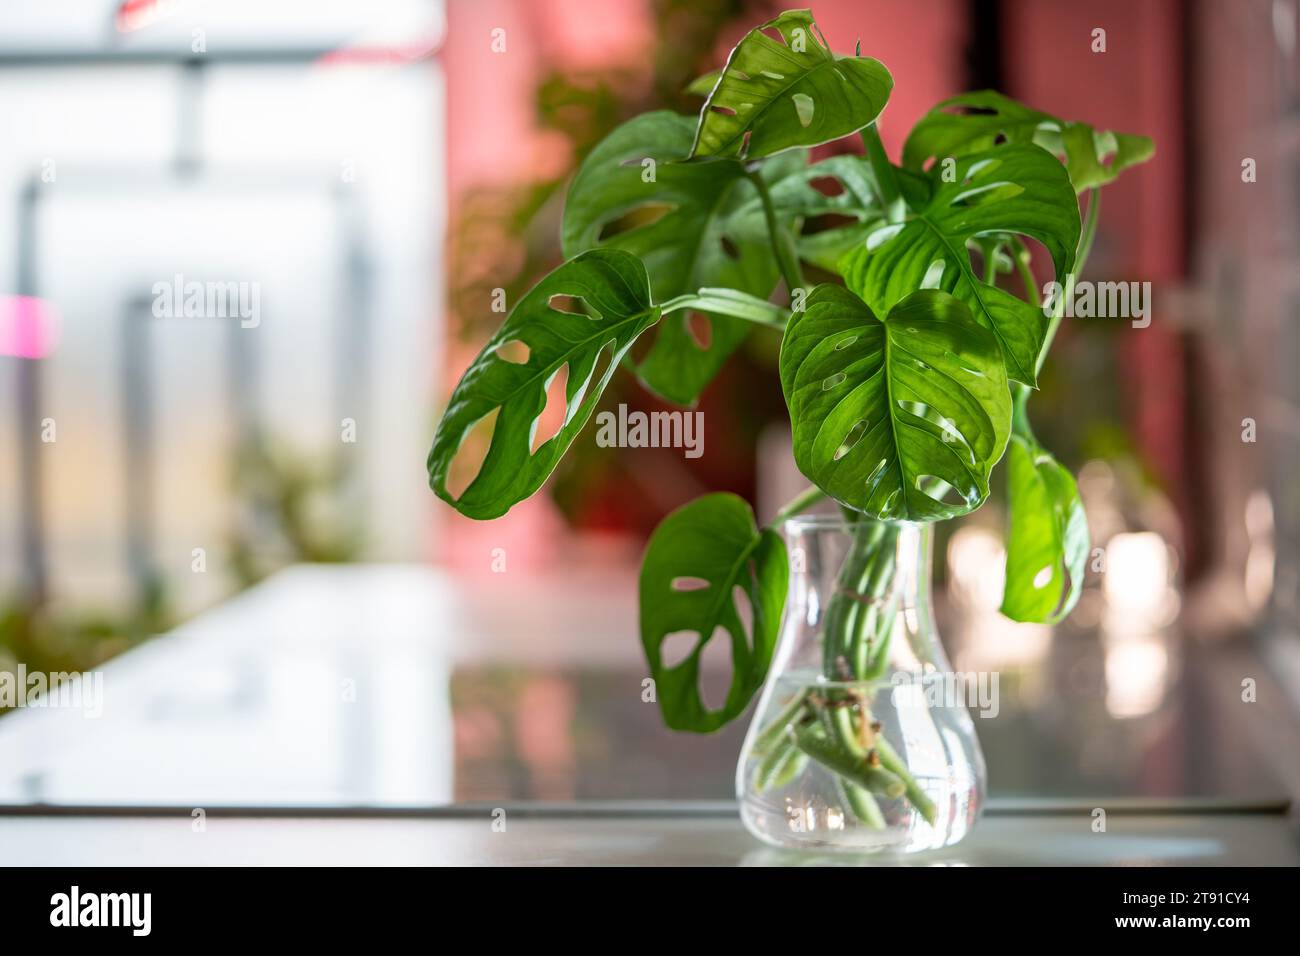 Germe plante Monstera masque de singe dans un vase en verre, boutures de tige dans l'eau éclairée par une lumière vive Banque D'Images